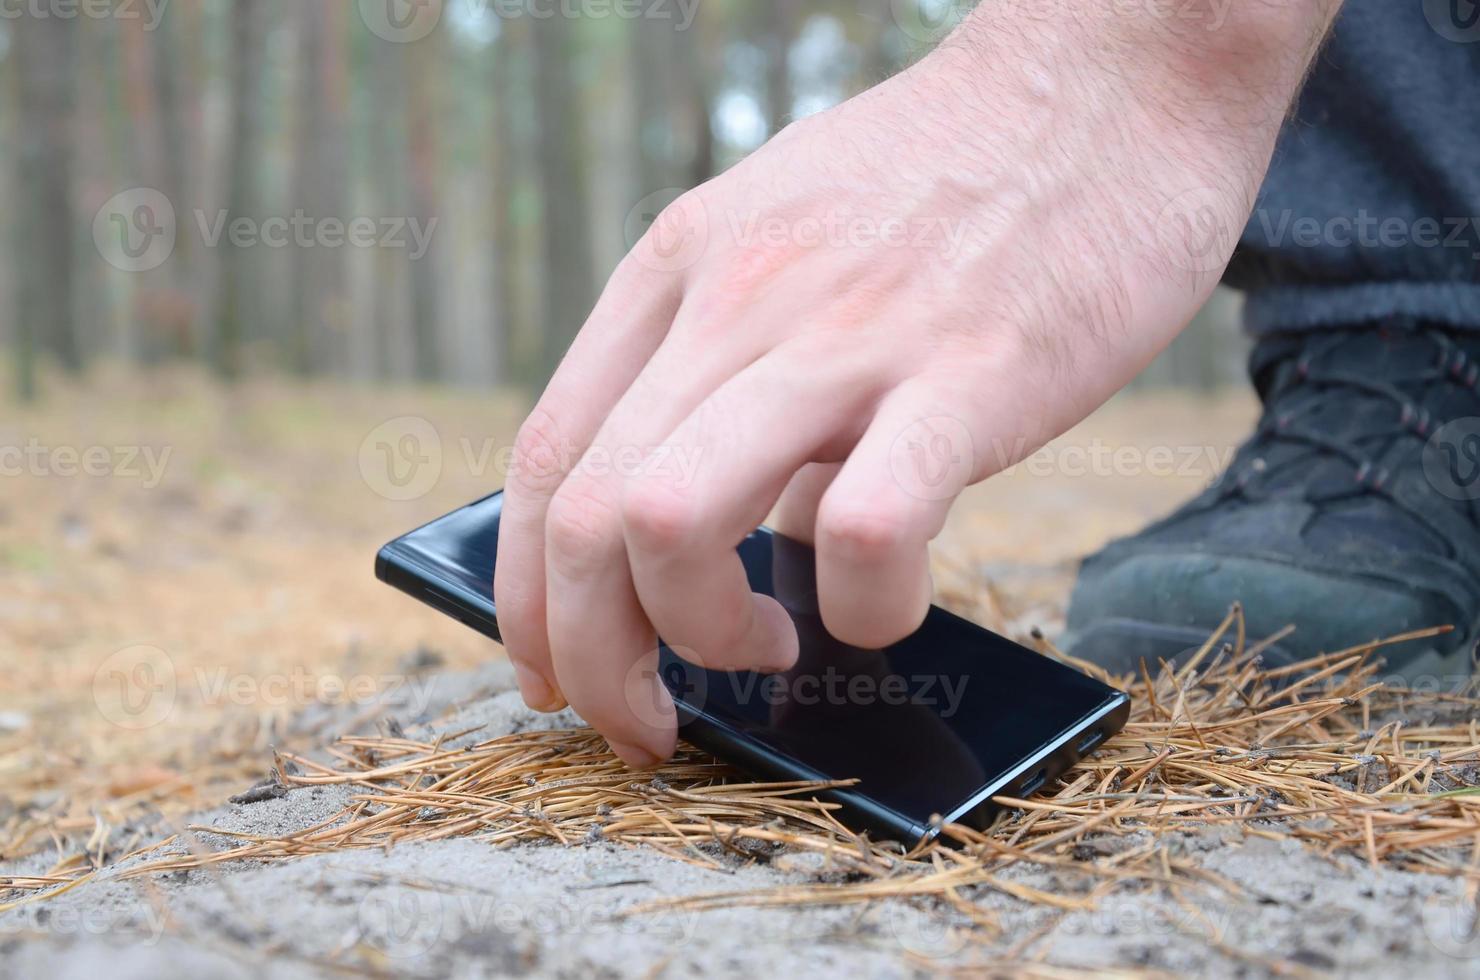 mano masculina recogiendo el teléfono móvil perdido de un suelo en el camino de madera de abeto de otoño. el concepto de encontrar algo valioso y buena suerte foto